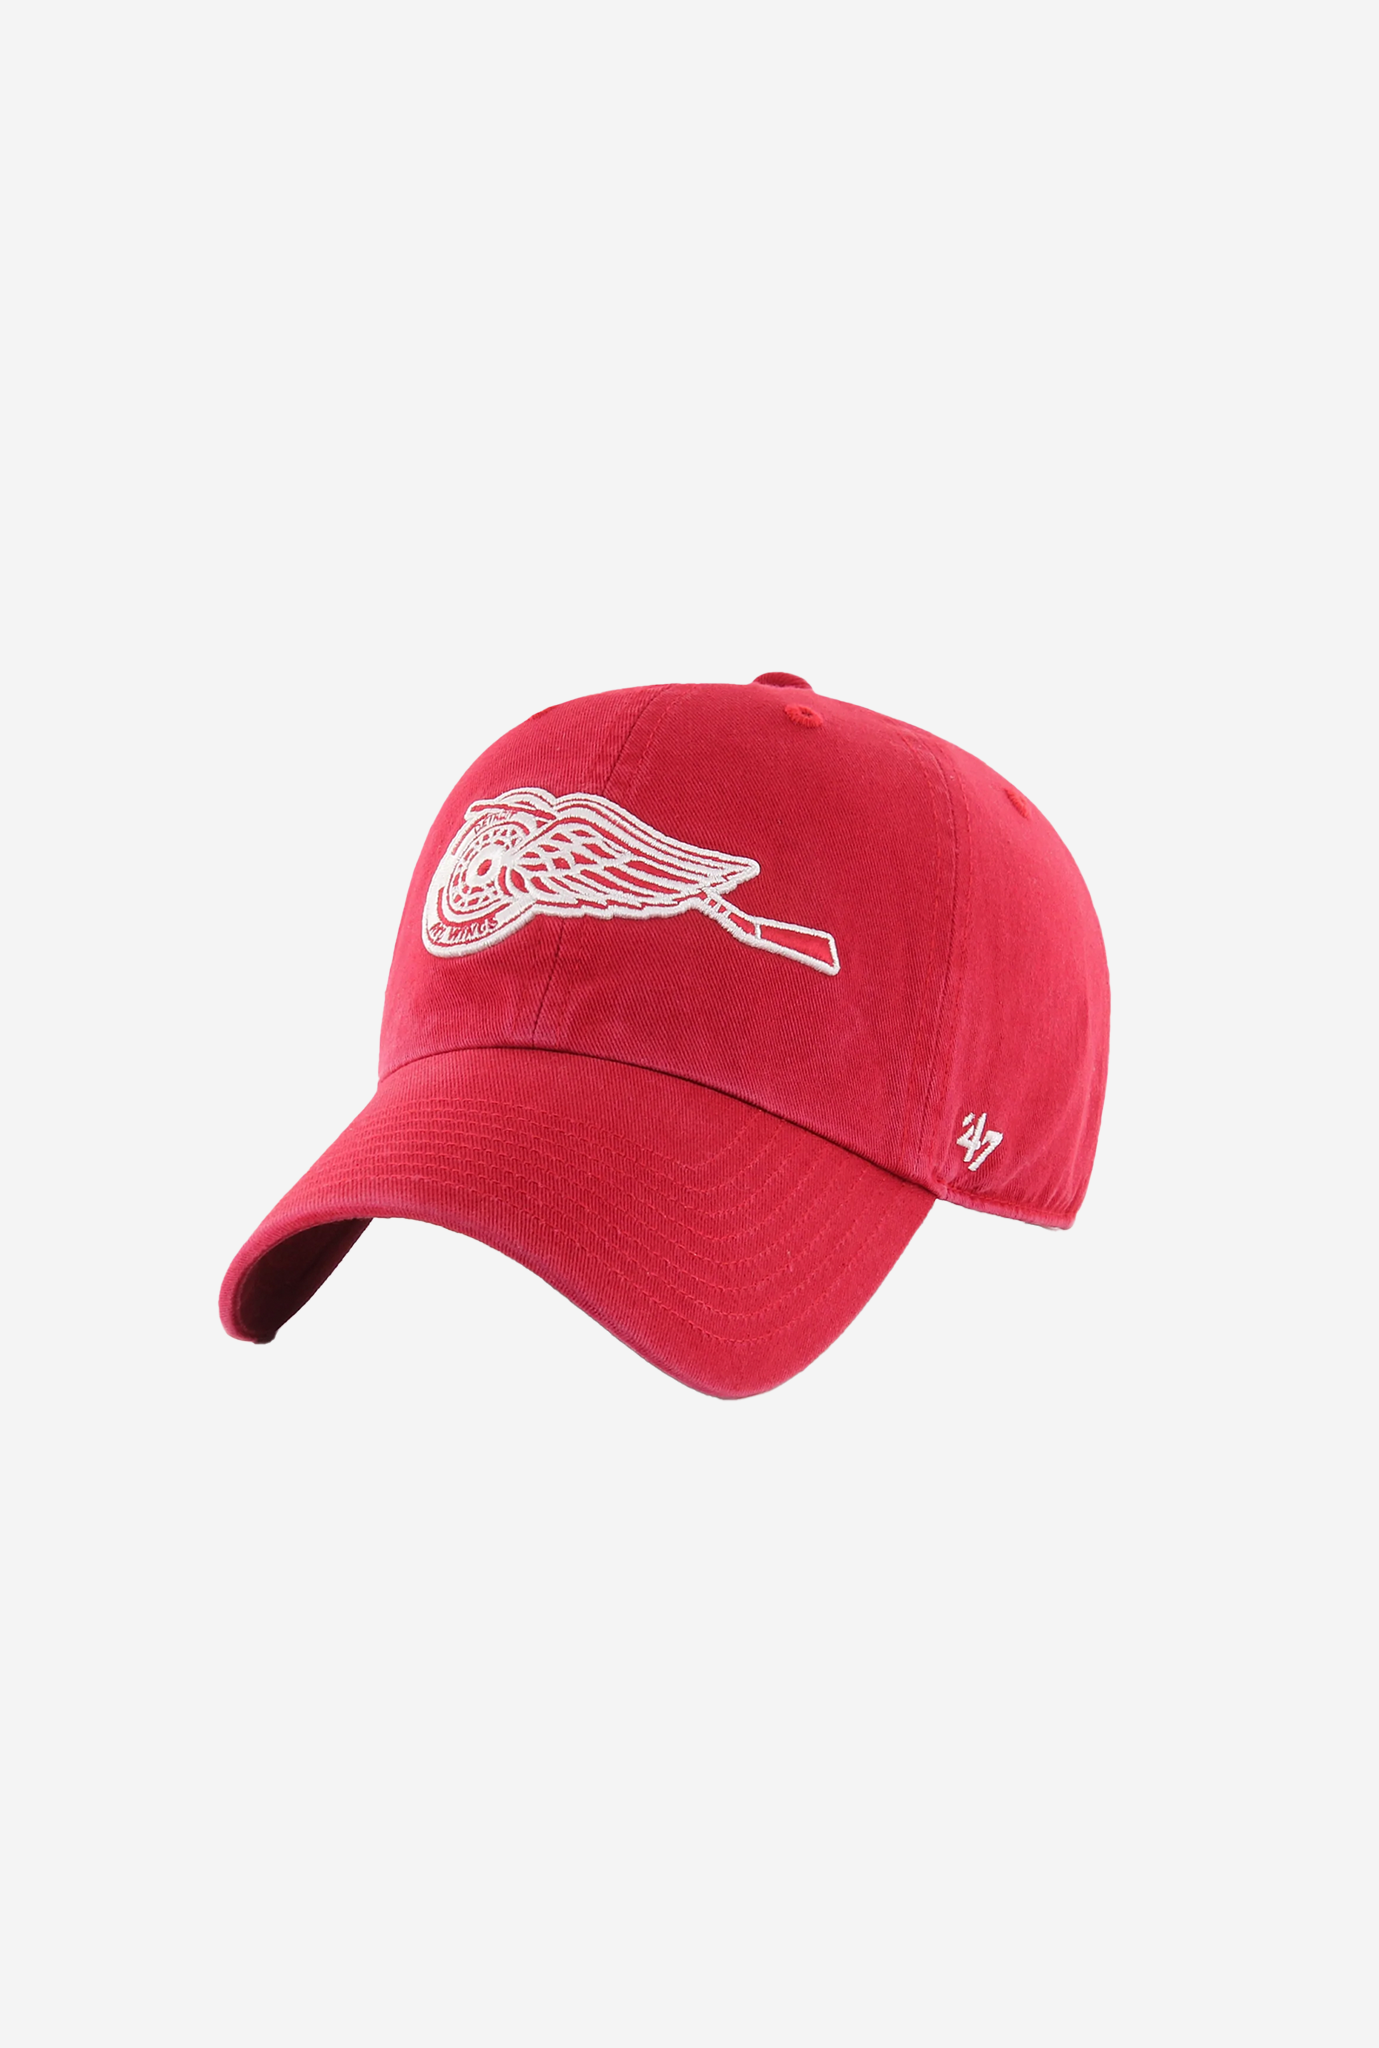 Detroit Red Wings Vintage Clean Up Cap